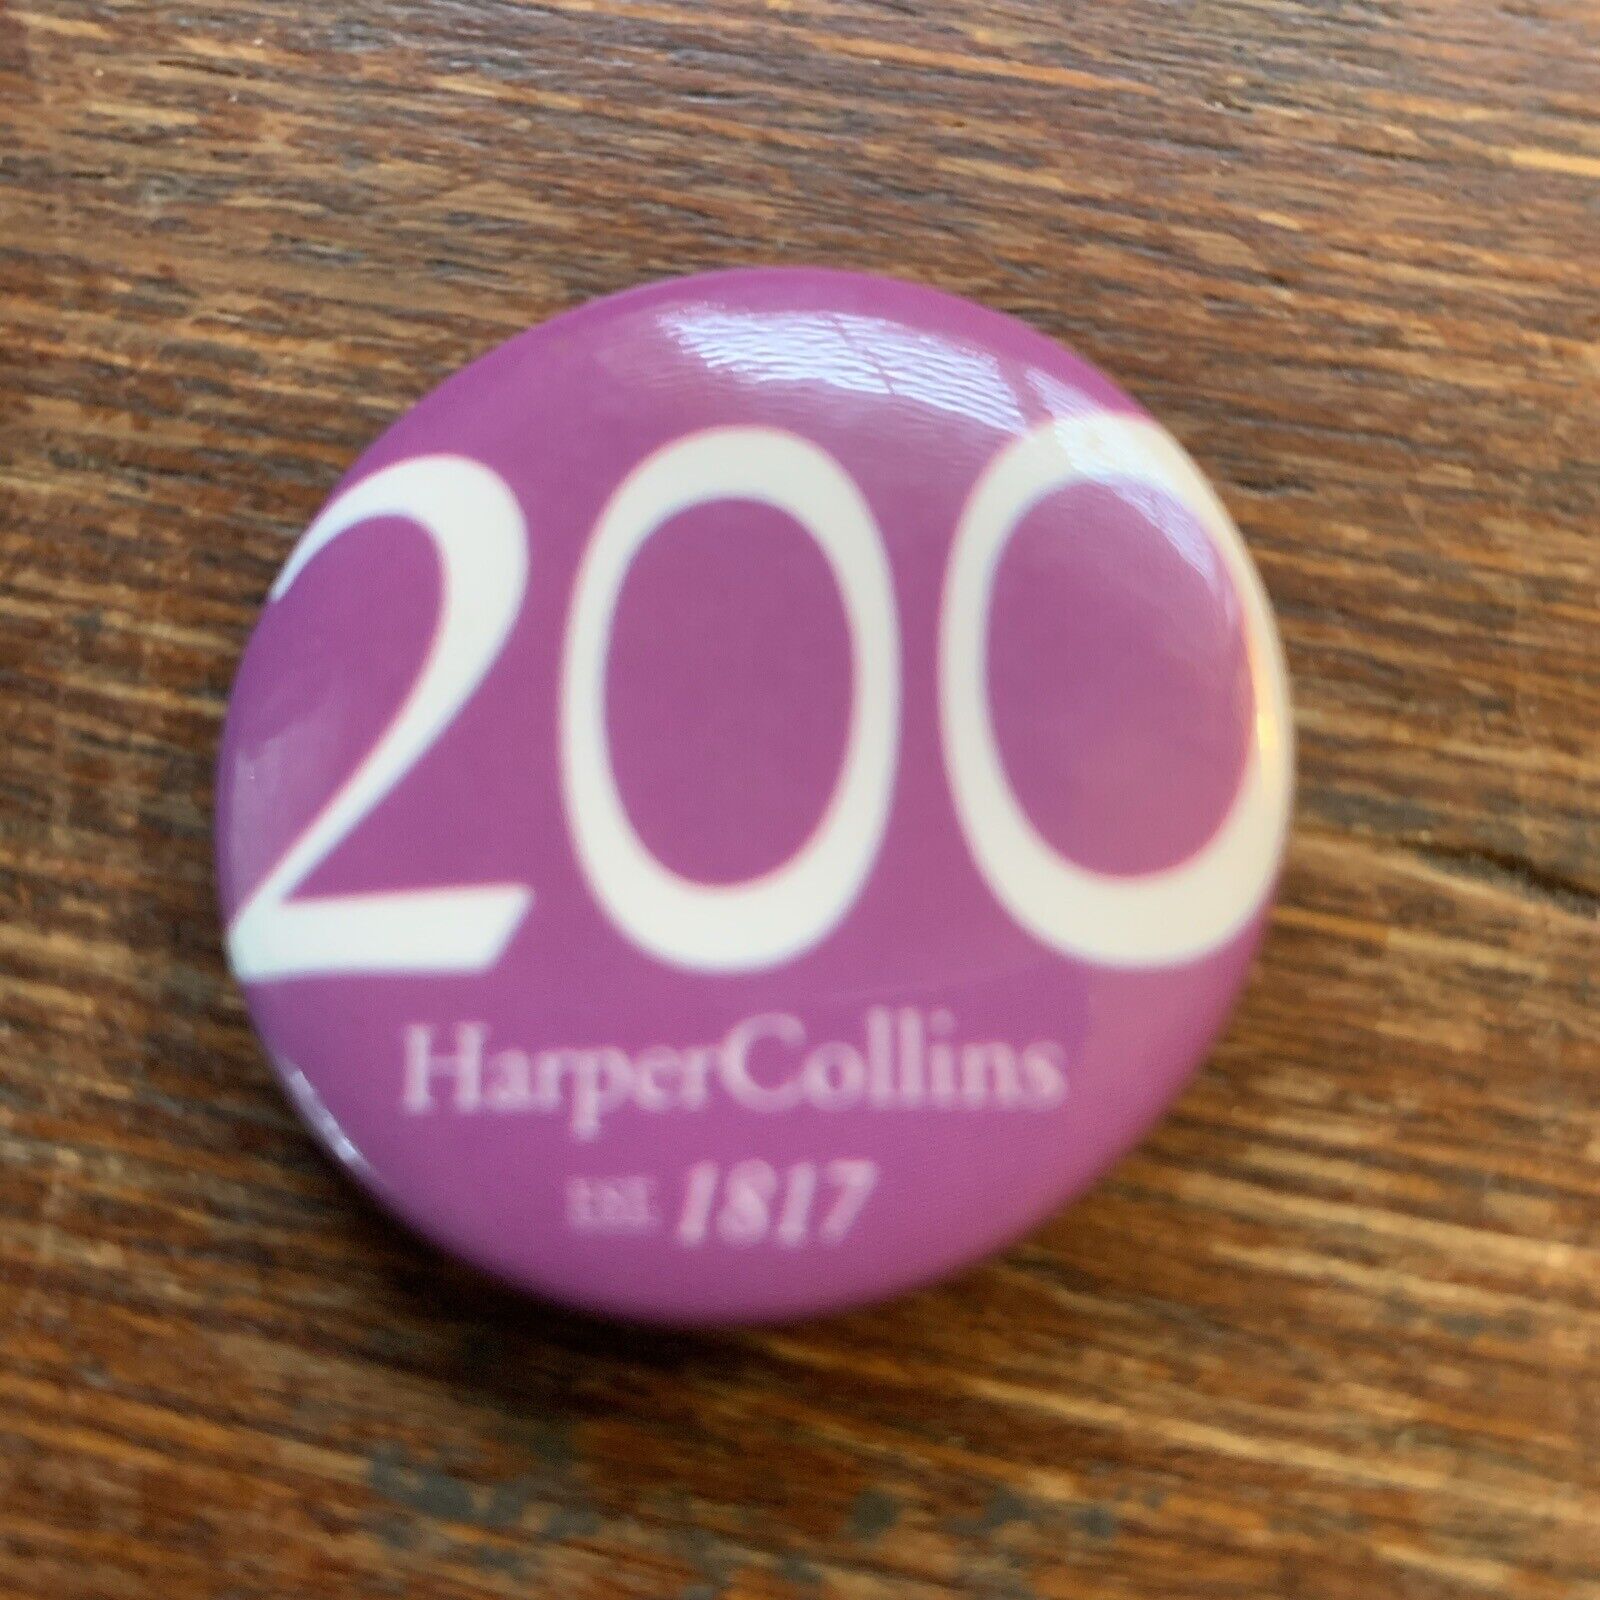 1.25 Inch 200 Harper Collins Est 1817 Pinback Button Adv